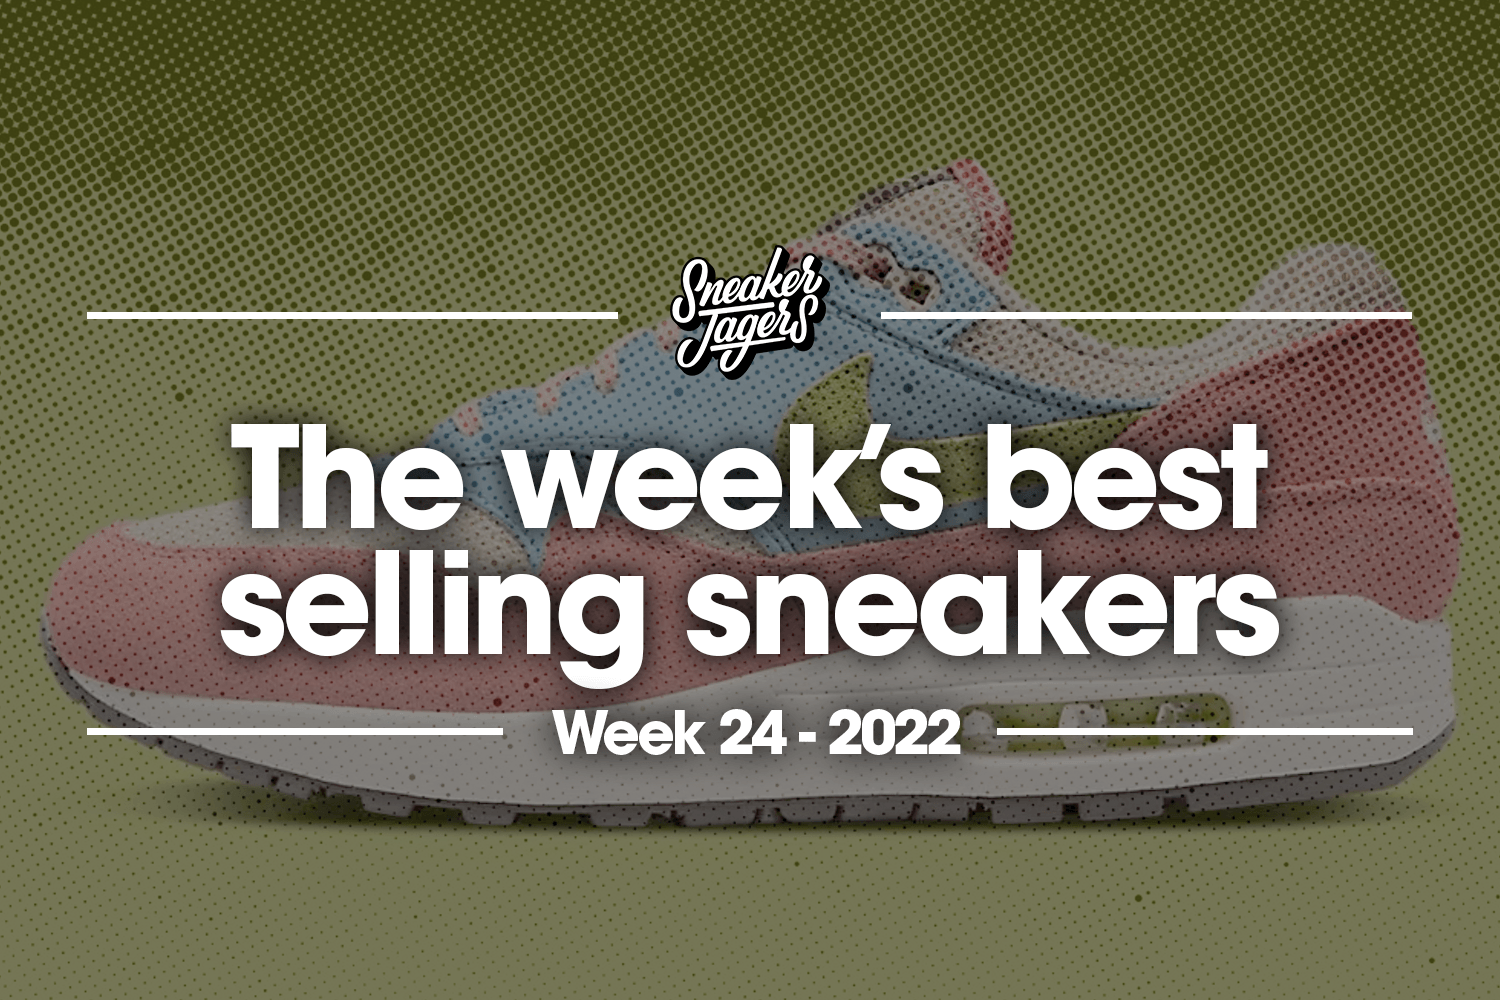 De 5 bestverkochte sneakers van week 24